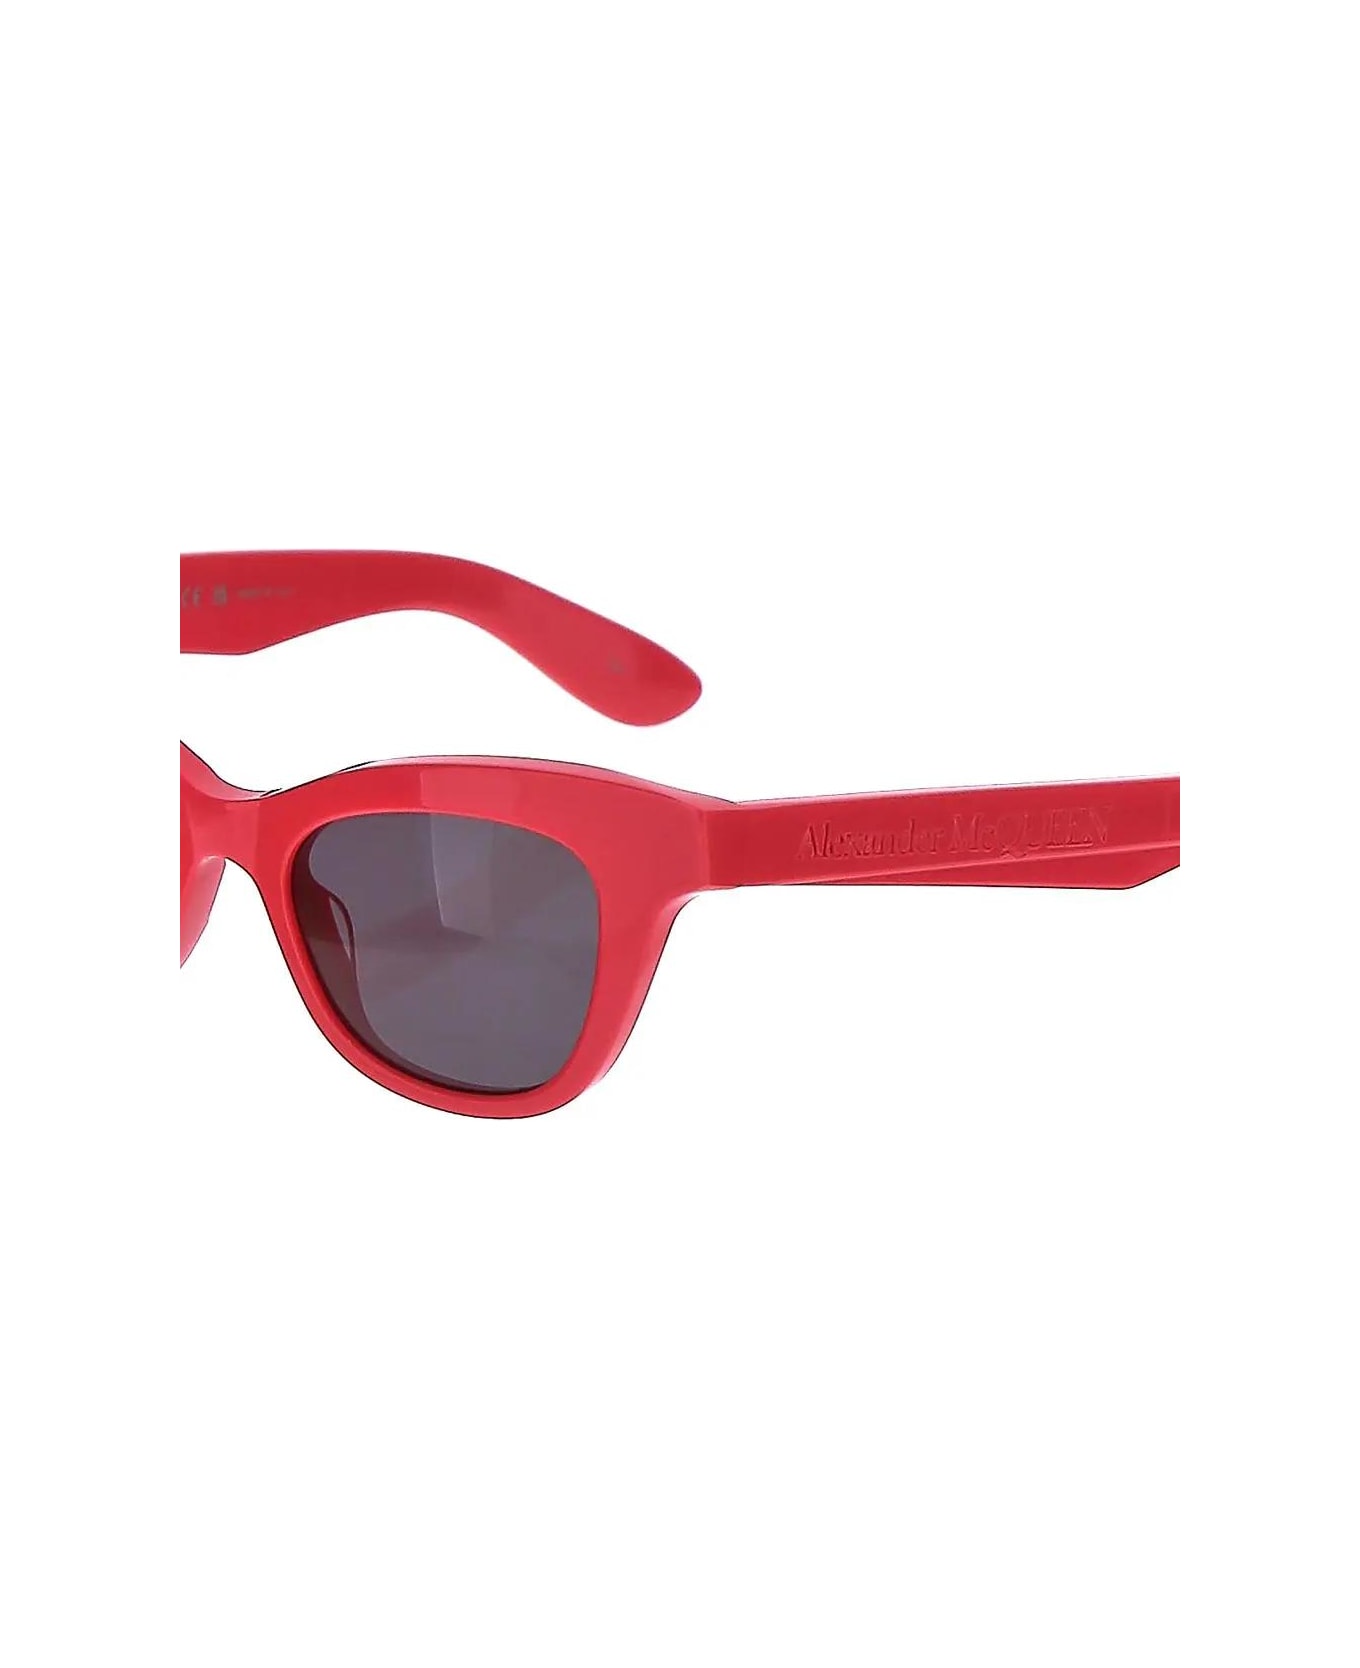 Alexander McQueen Sunglasses - Pink サングラス